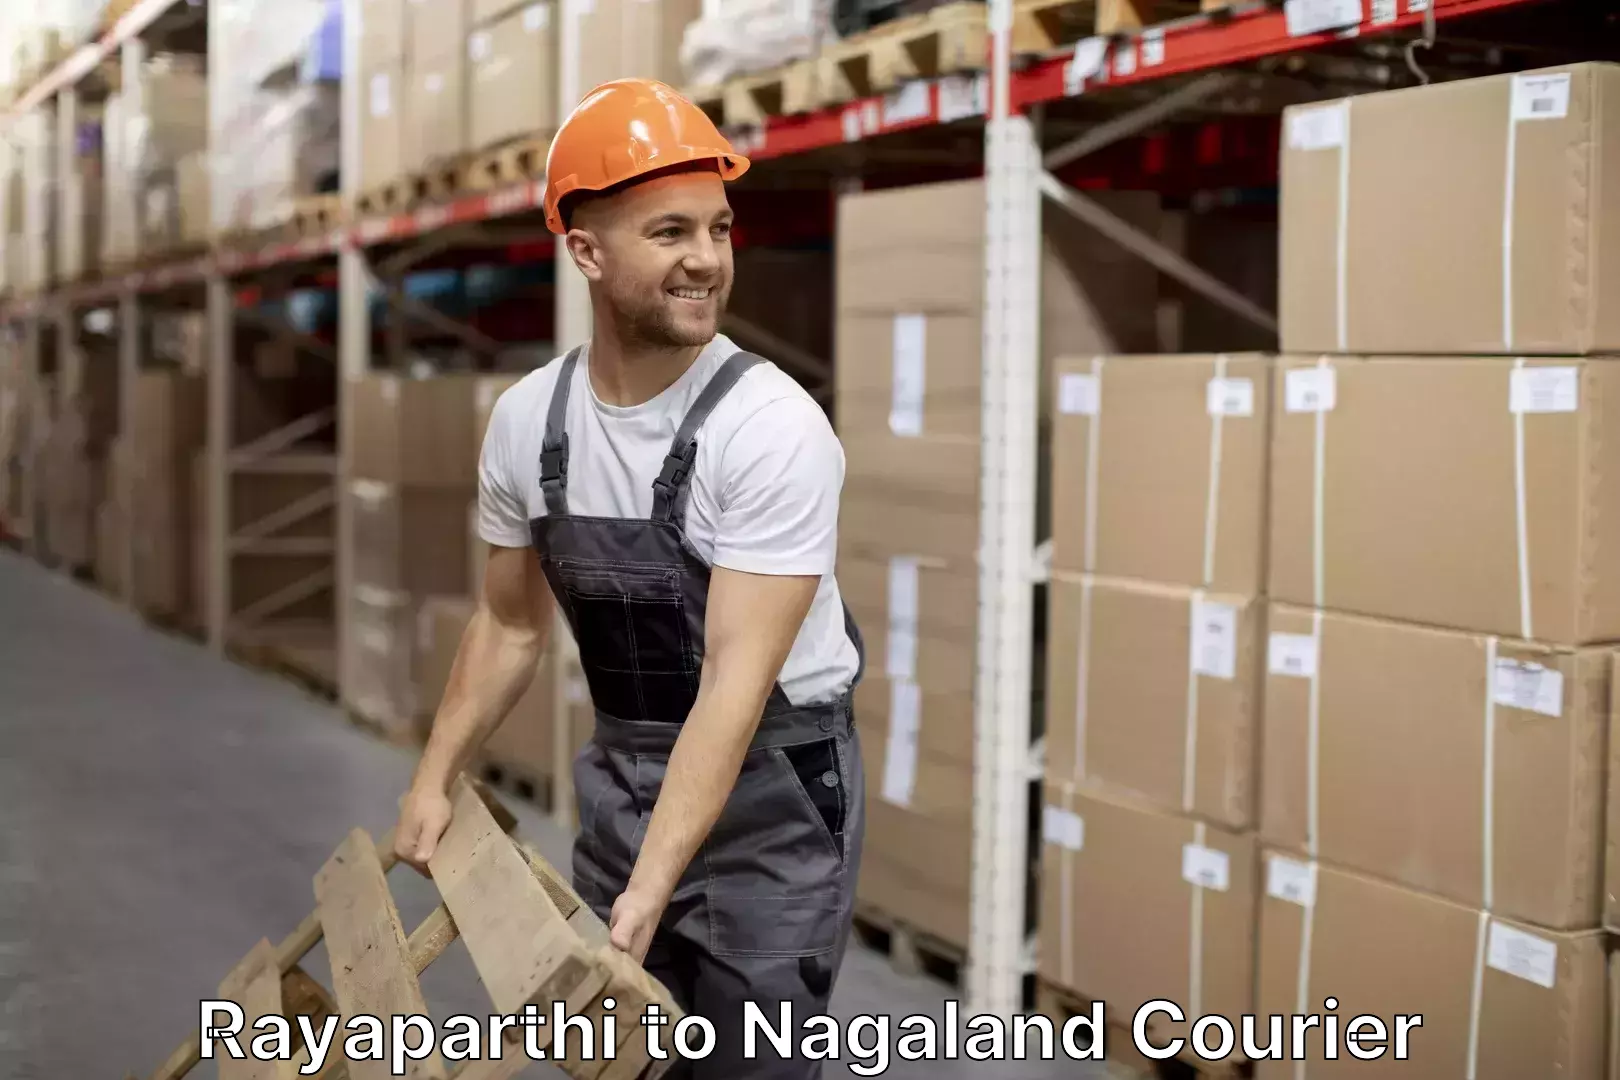 Customized furniture moving Rayaparthi to Nagaland